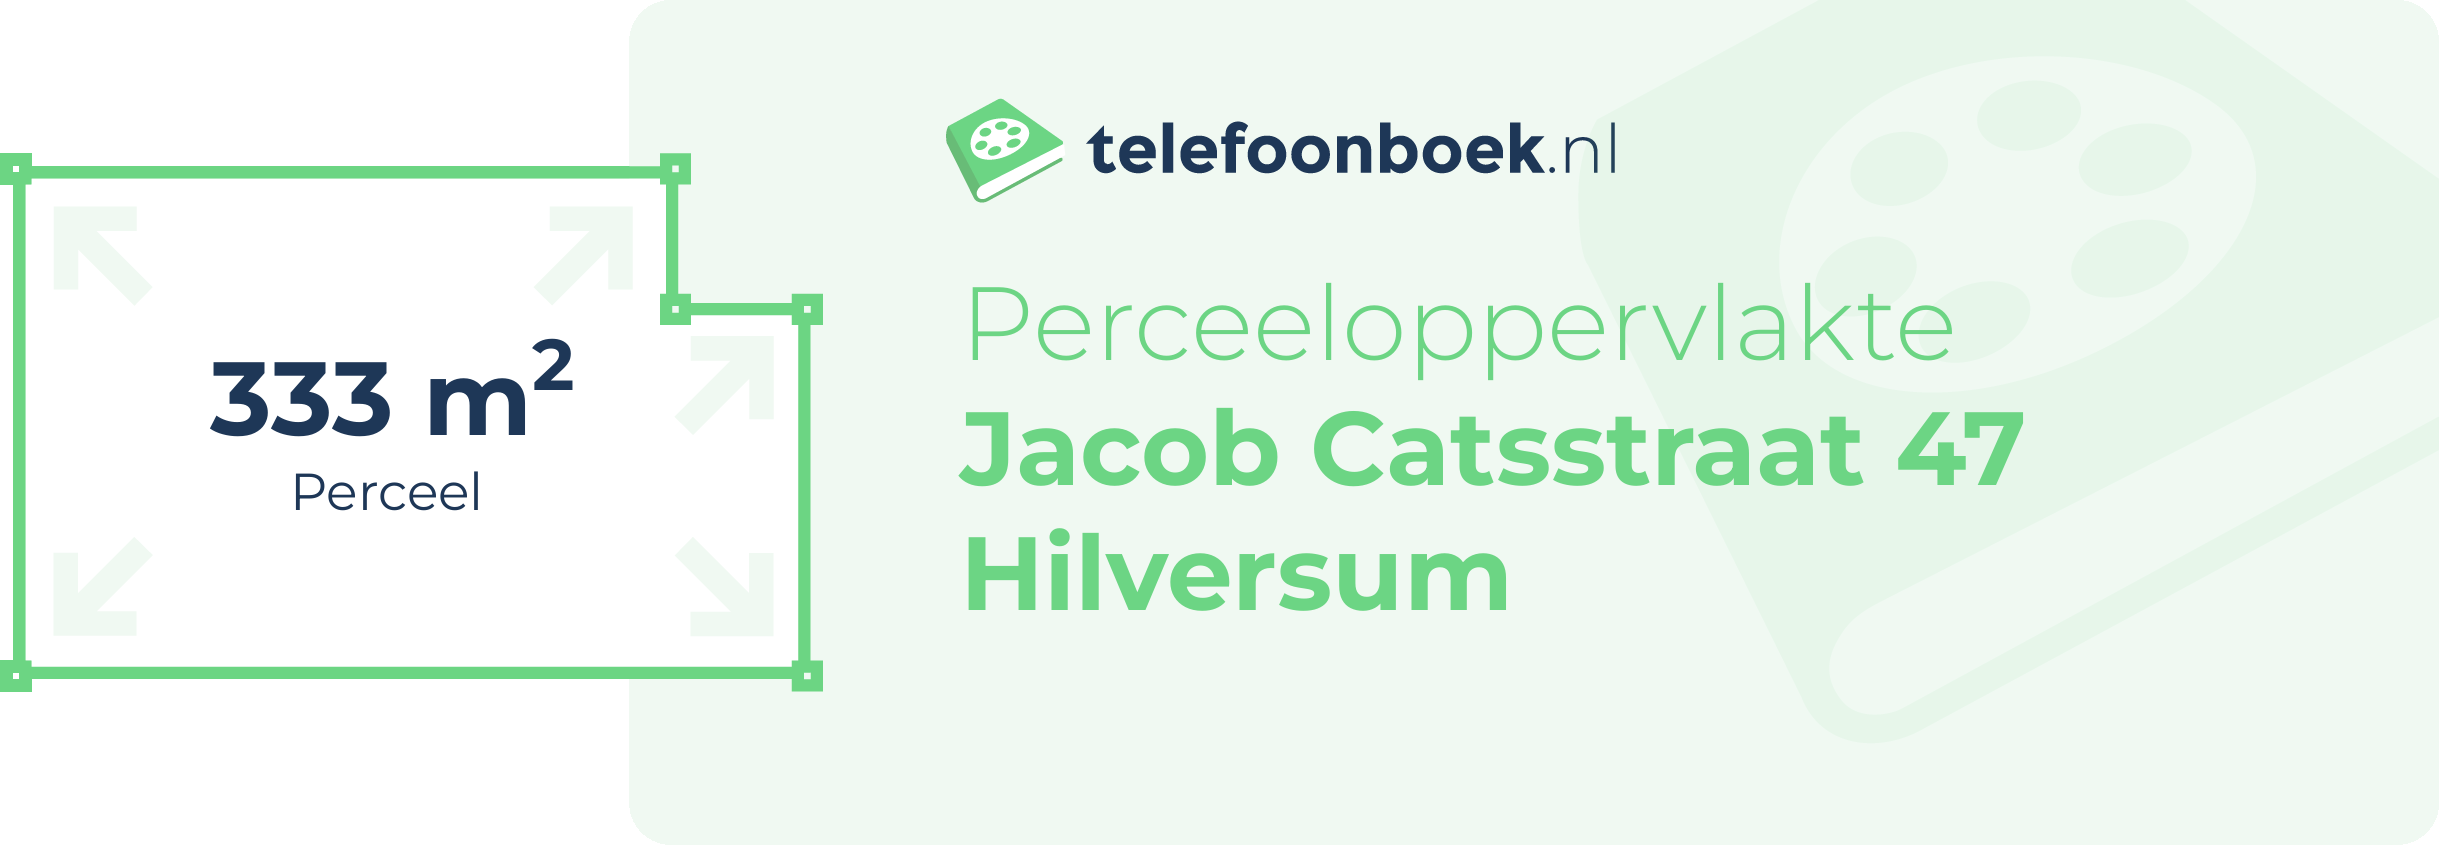 Perceeloppervlakte Jacob Catsstraat 47 Hilversum